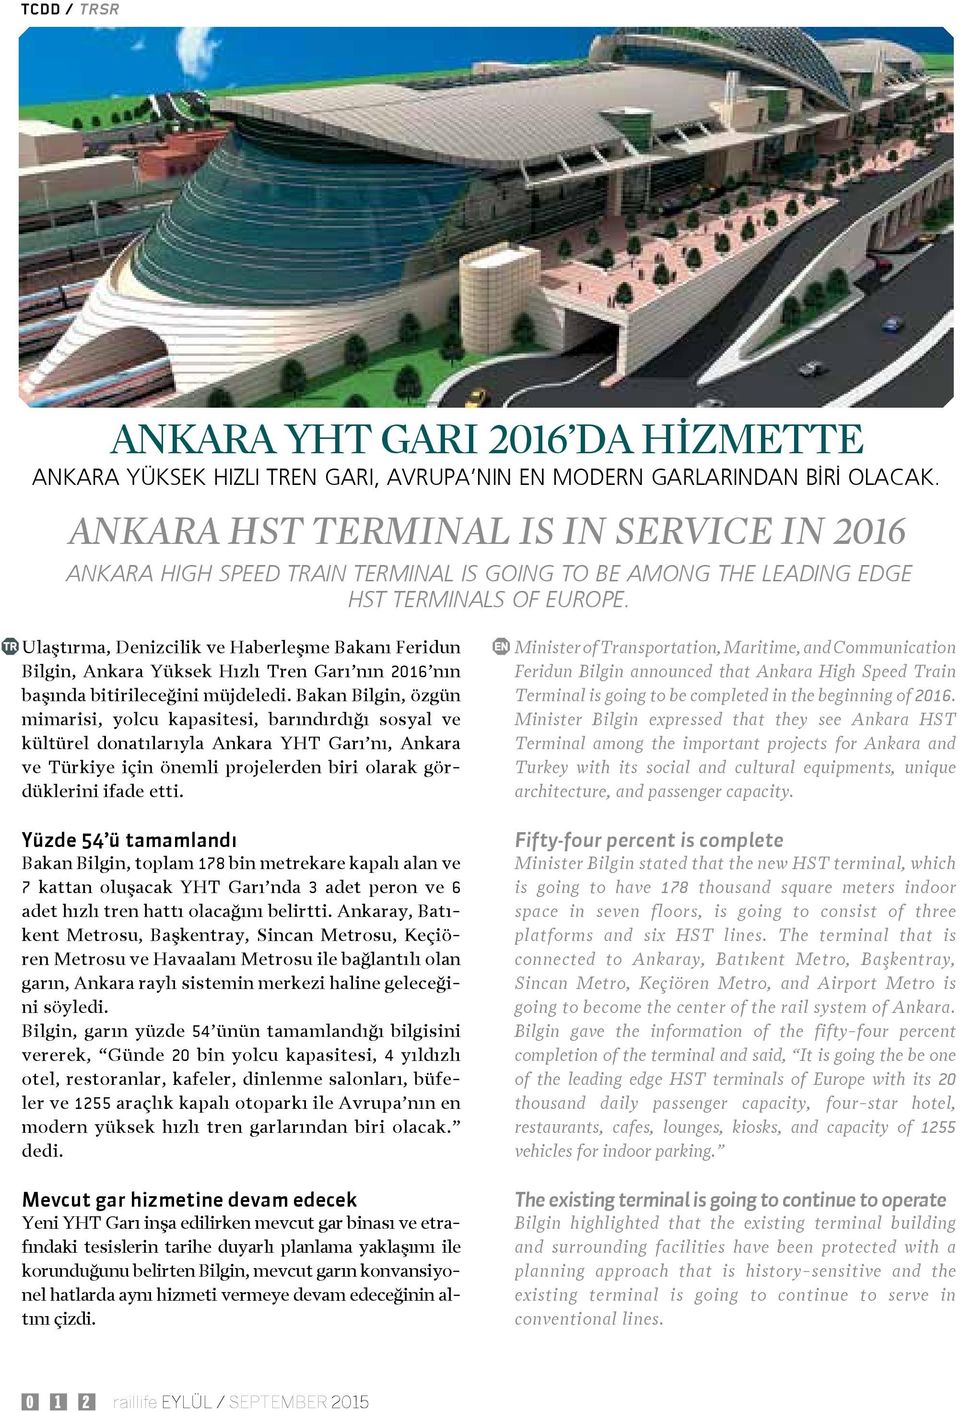 Ulaştırma, Denizcilik ve Haberleşme Bakanı Feridun Bilgin, Ankara Yüksek Hızlı Tren Garı nın 2016 nın başında bitirileceğini müjdeledi.